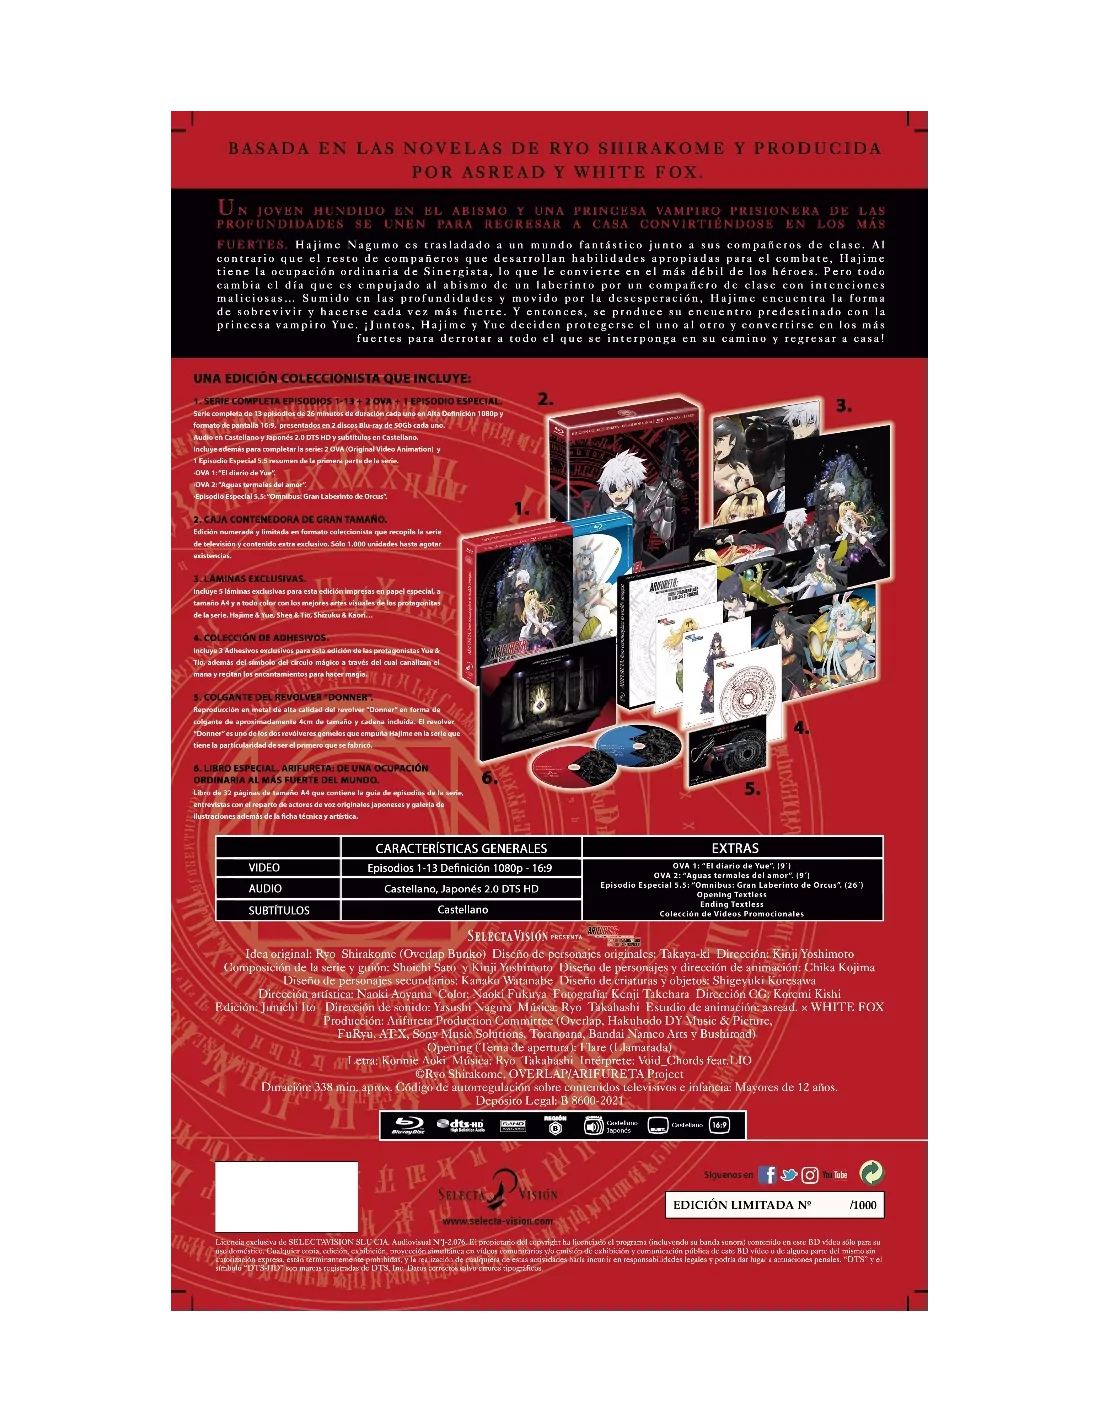 Dentro del Laberinto - Edición Metálica Blu-ray